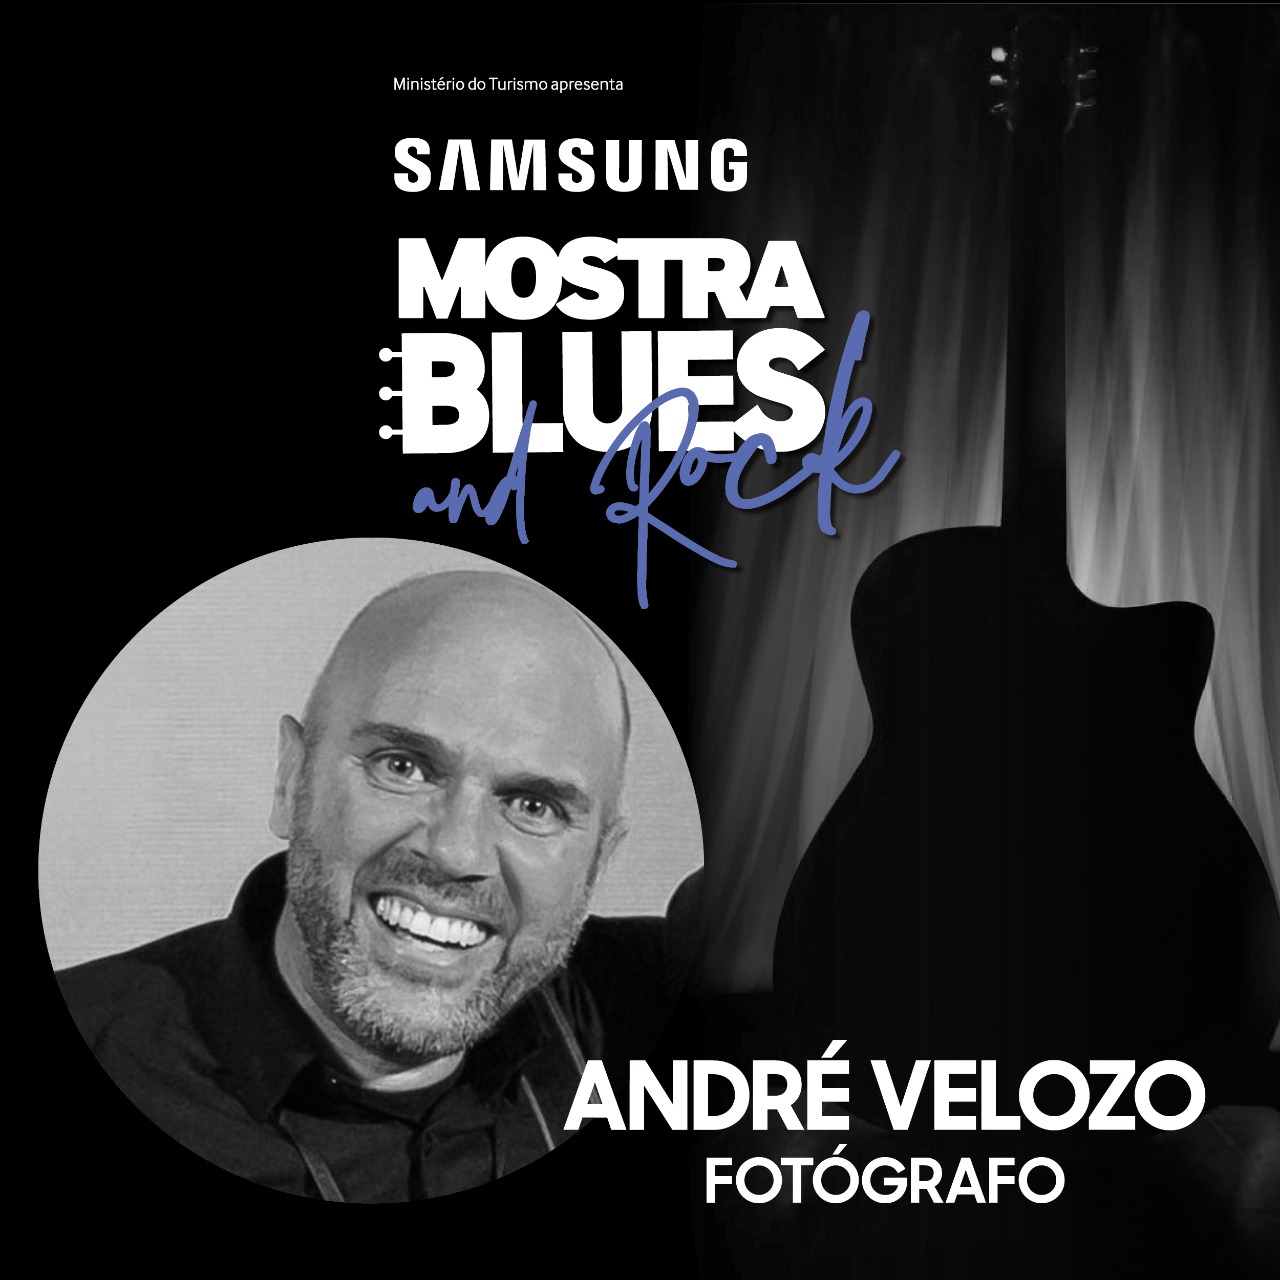 Samsung Mostra Blues & Rock leva a Exposição Blues e Rock para o InovaUSP, com acesso gratuito ao público